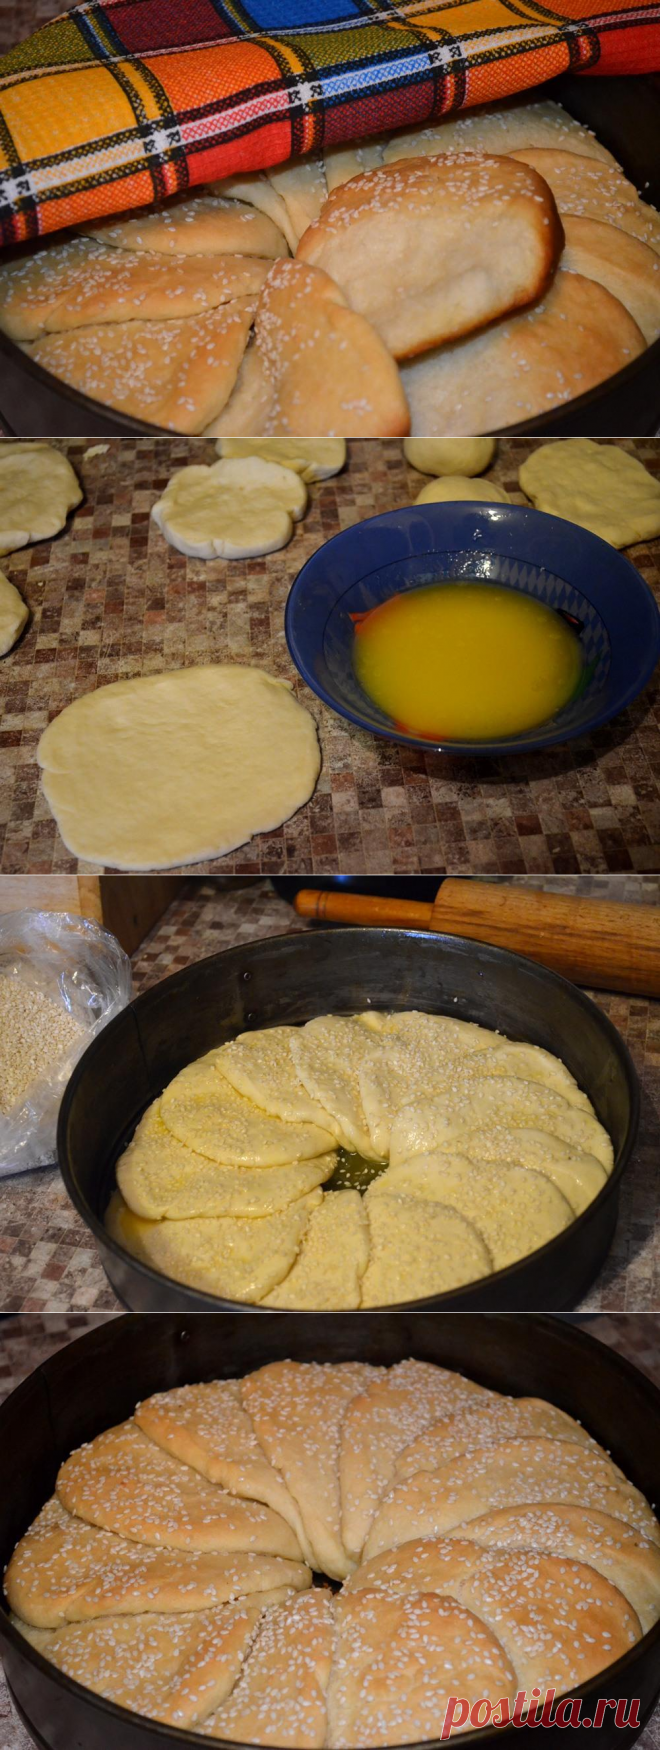 Cербский хлеб - пошаговый рецепт с фото - как приготовить - ингредиенты, состав, время приготовления